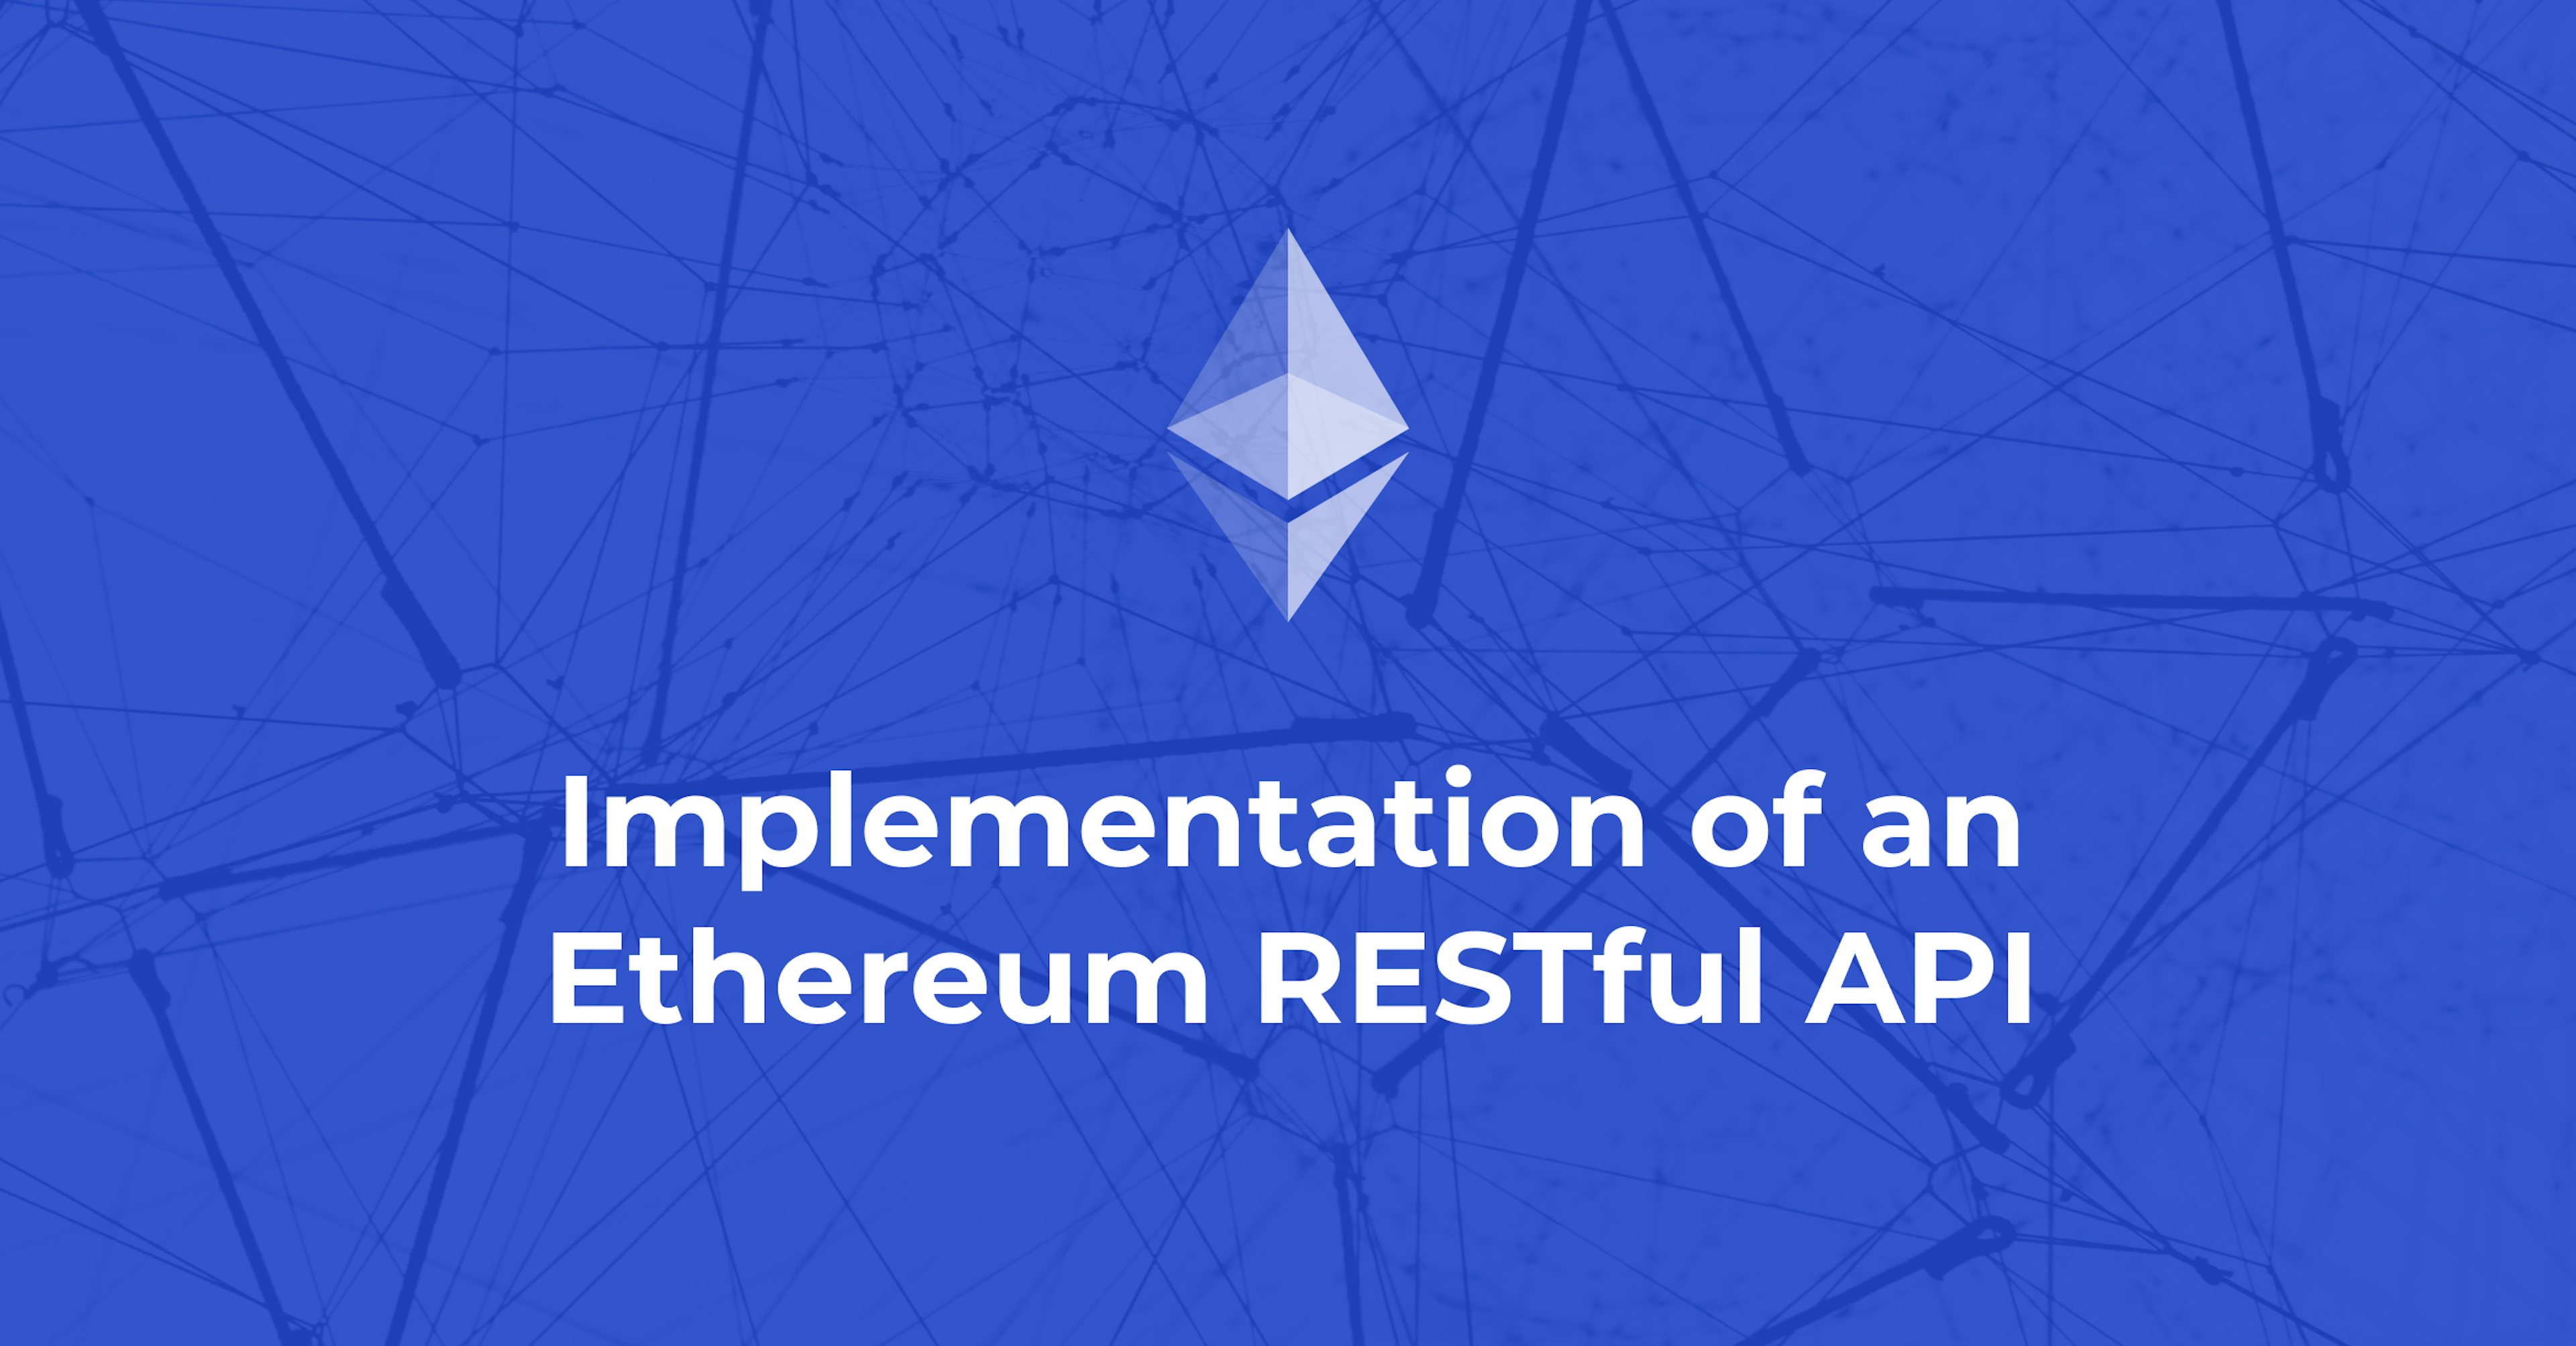 Implementation of an Ethereum RESTful API